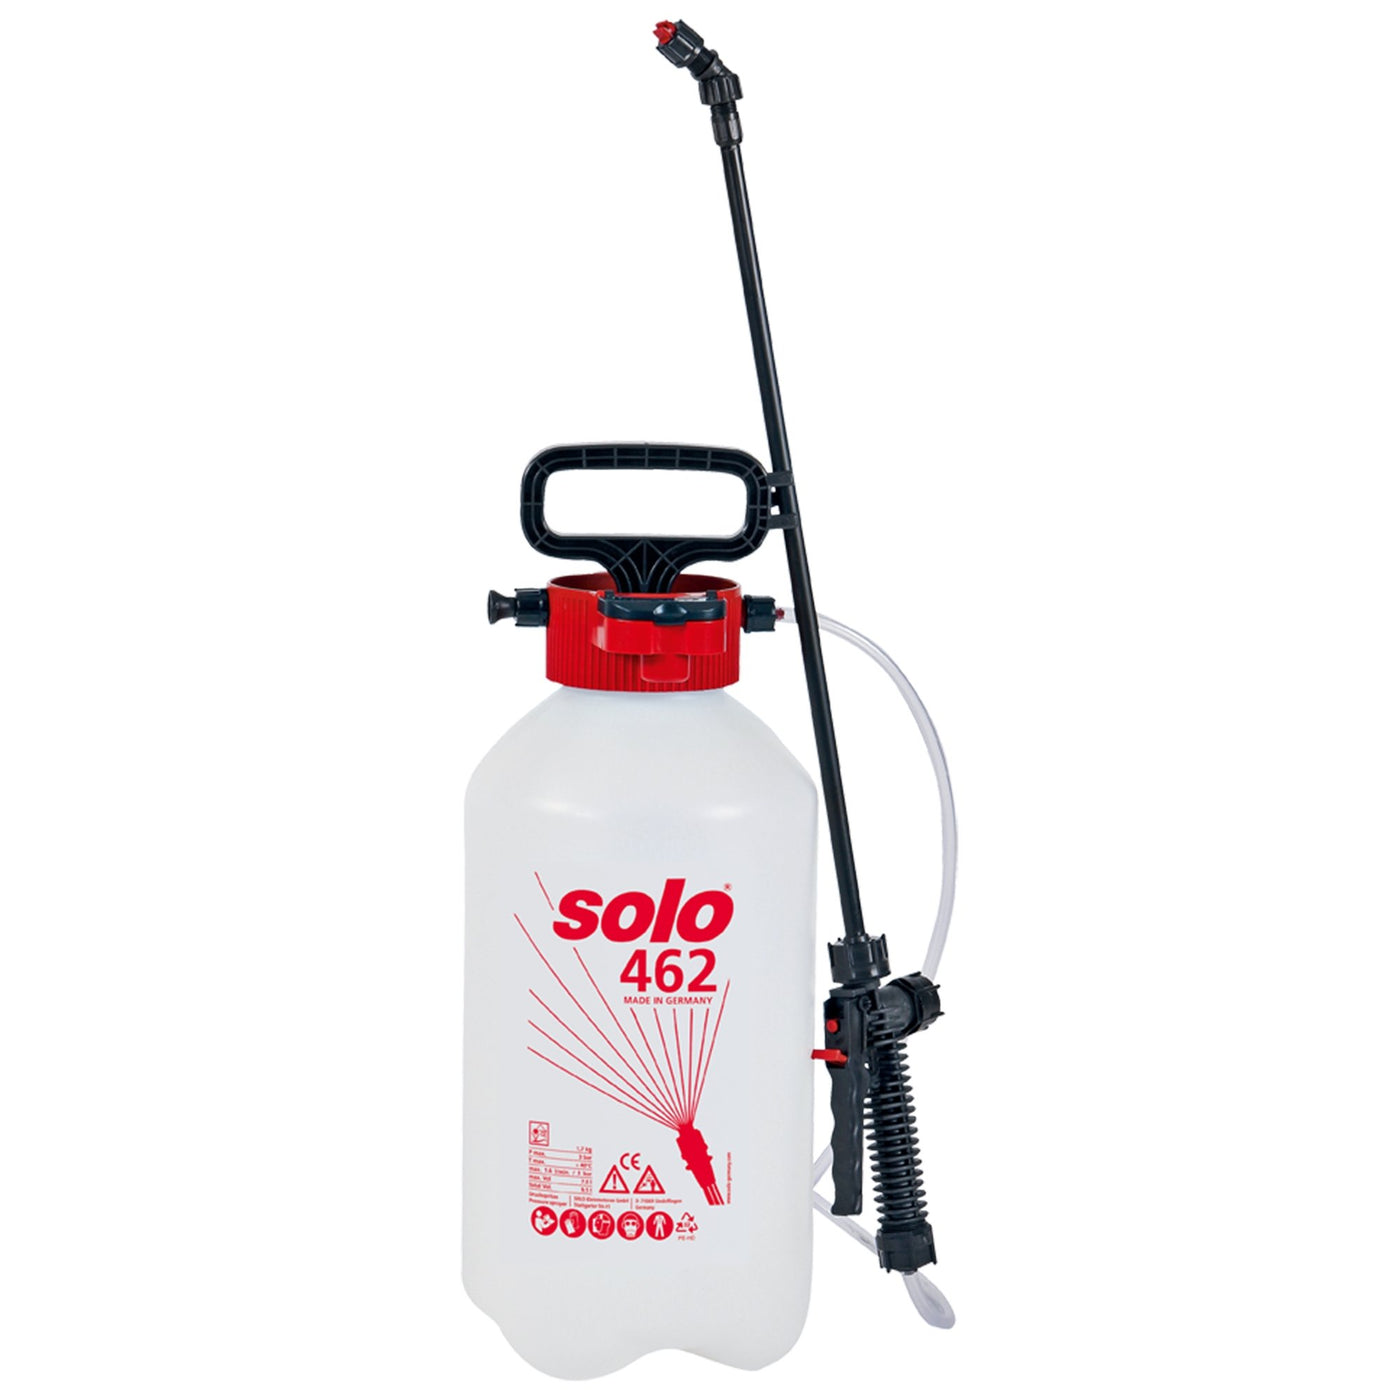 Solo garden sprayer 462 7L - Solo New Zealand